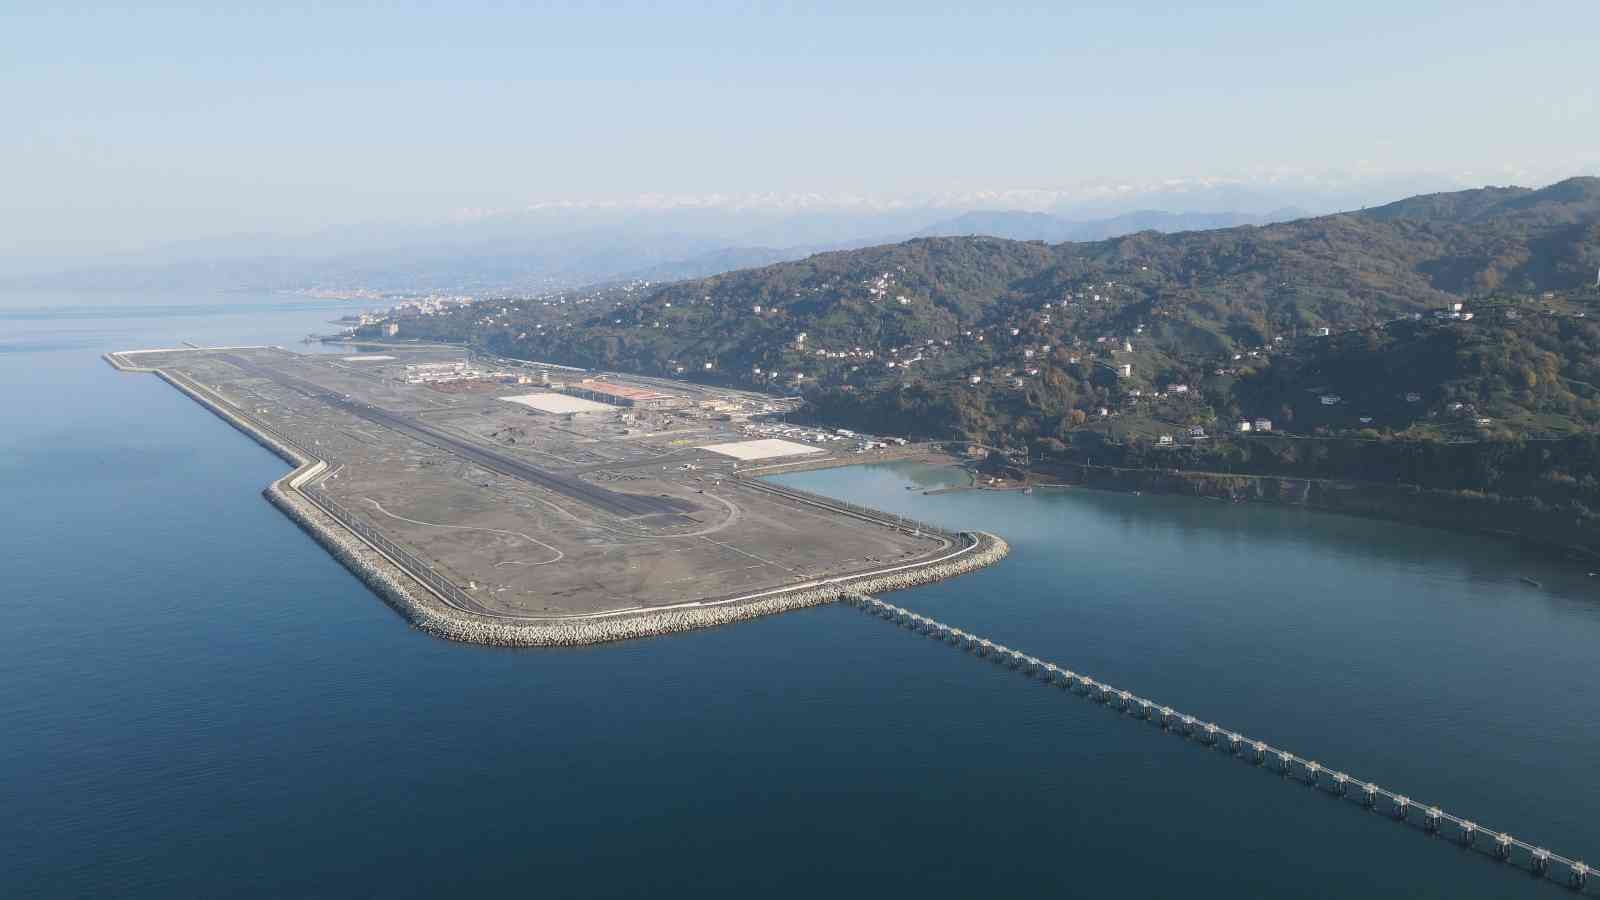 Rize-Artvin Havalimanı’nın deniz dolgusu için planlanan 100 milyon ton dolgunun 99 milyon tonu tamamlandı #rize